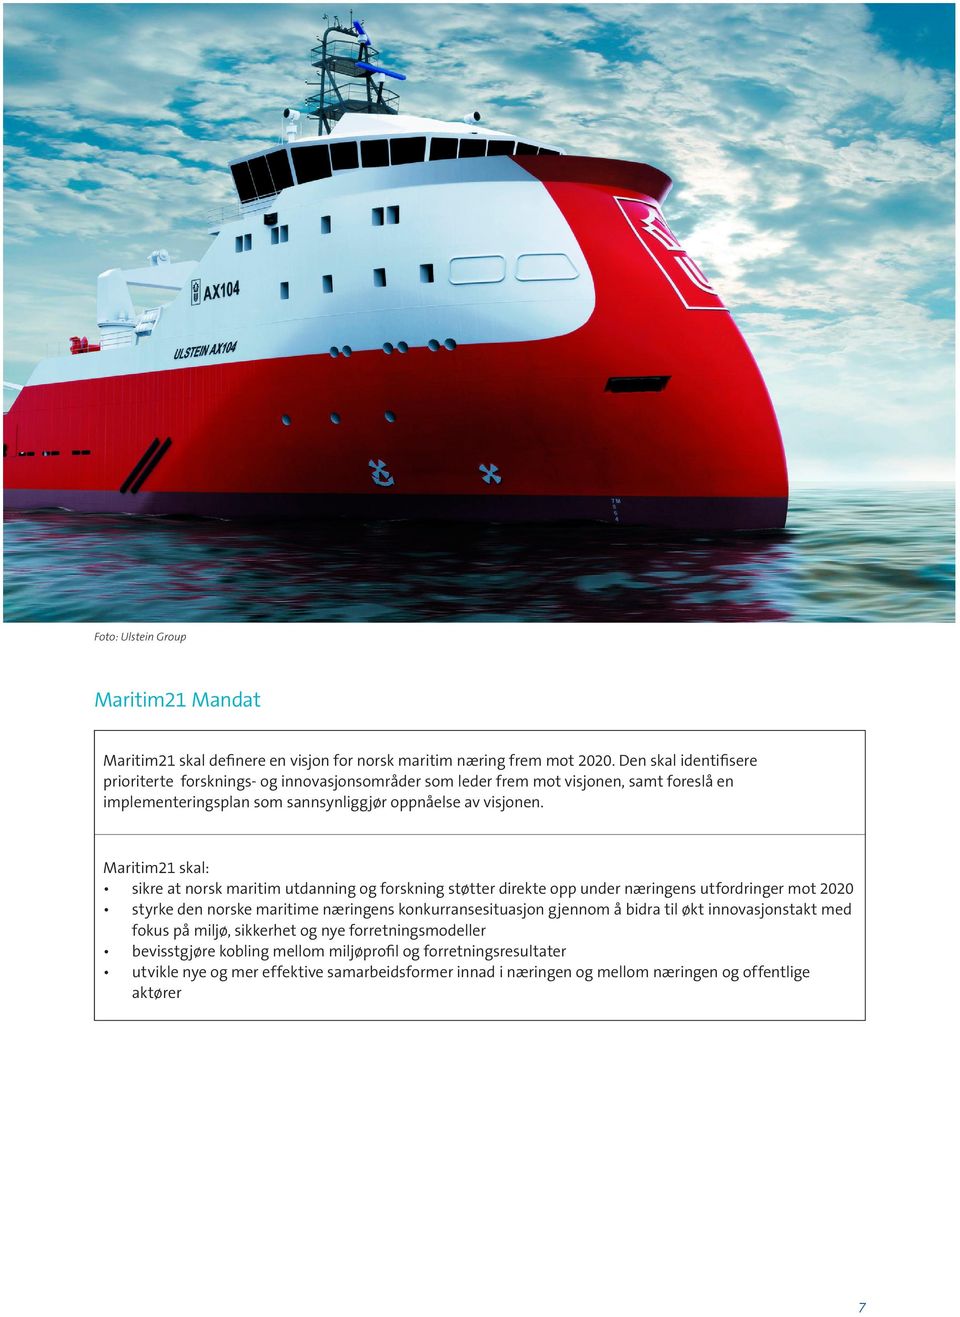 Maritim21 skal: sikre at norsk maritim utdanning og forskning støtter direkte opp under næringens utfordringer mot 2020 styrke den norske maritime næringens konkurransesituasjon